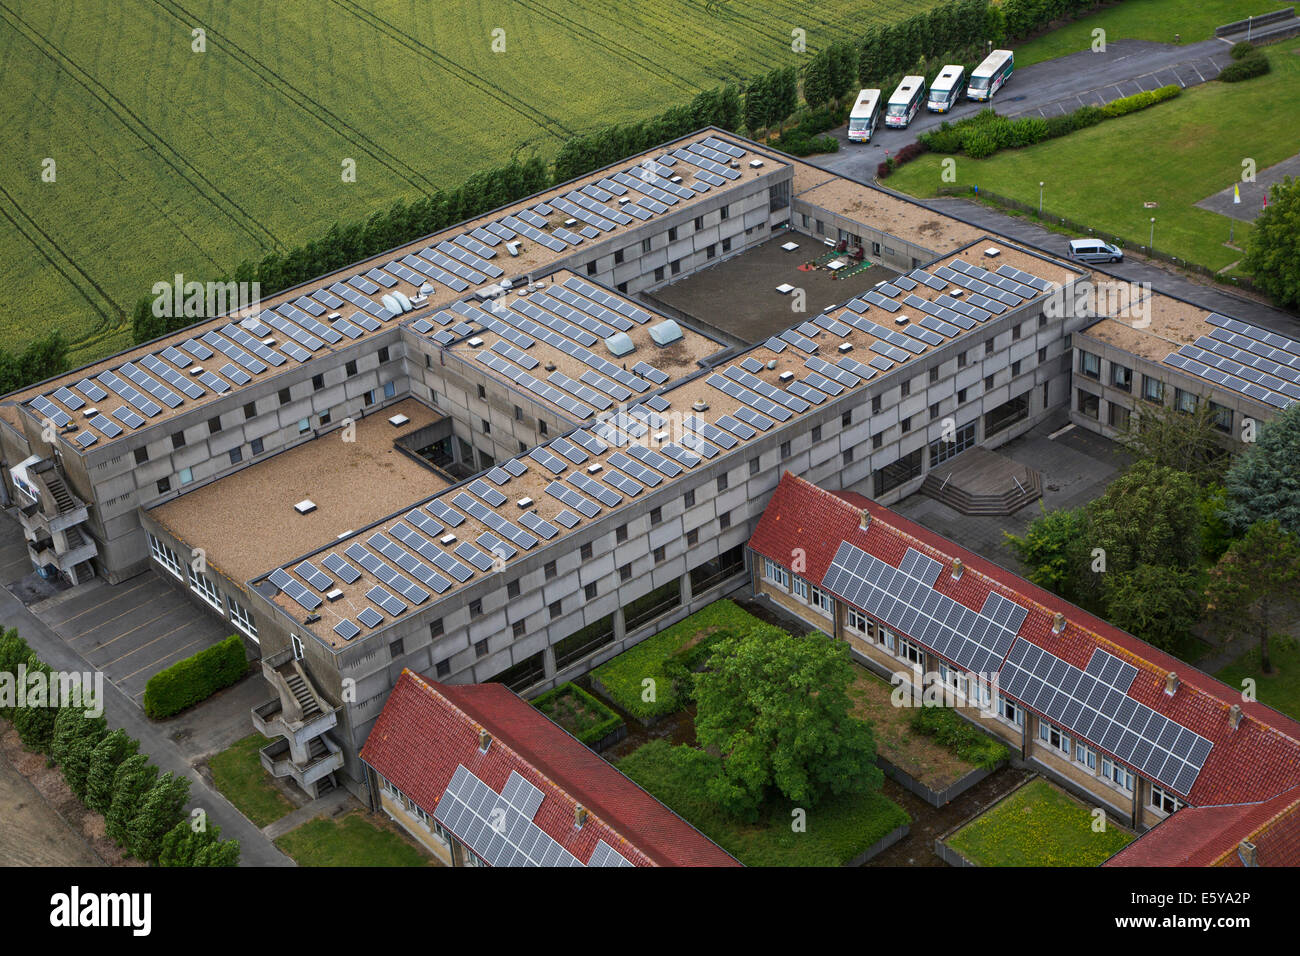 Des panneaux solaires photovoltaïques sur le toit de l'électricité à l'énergie solaire aux immeubles de bureaux Banque D'Images